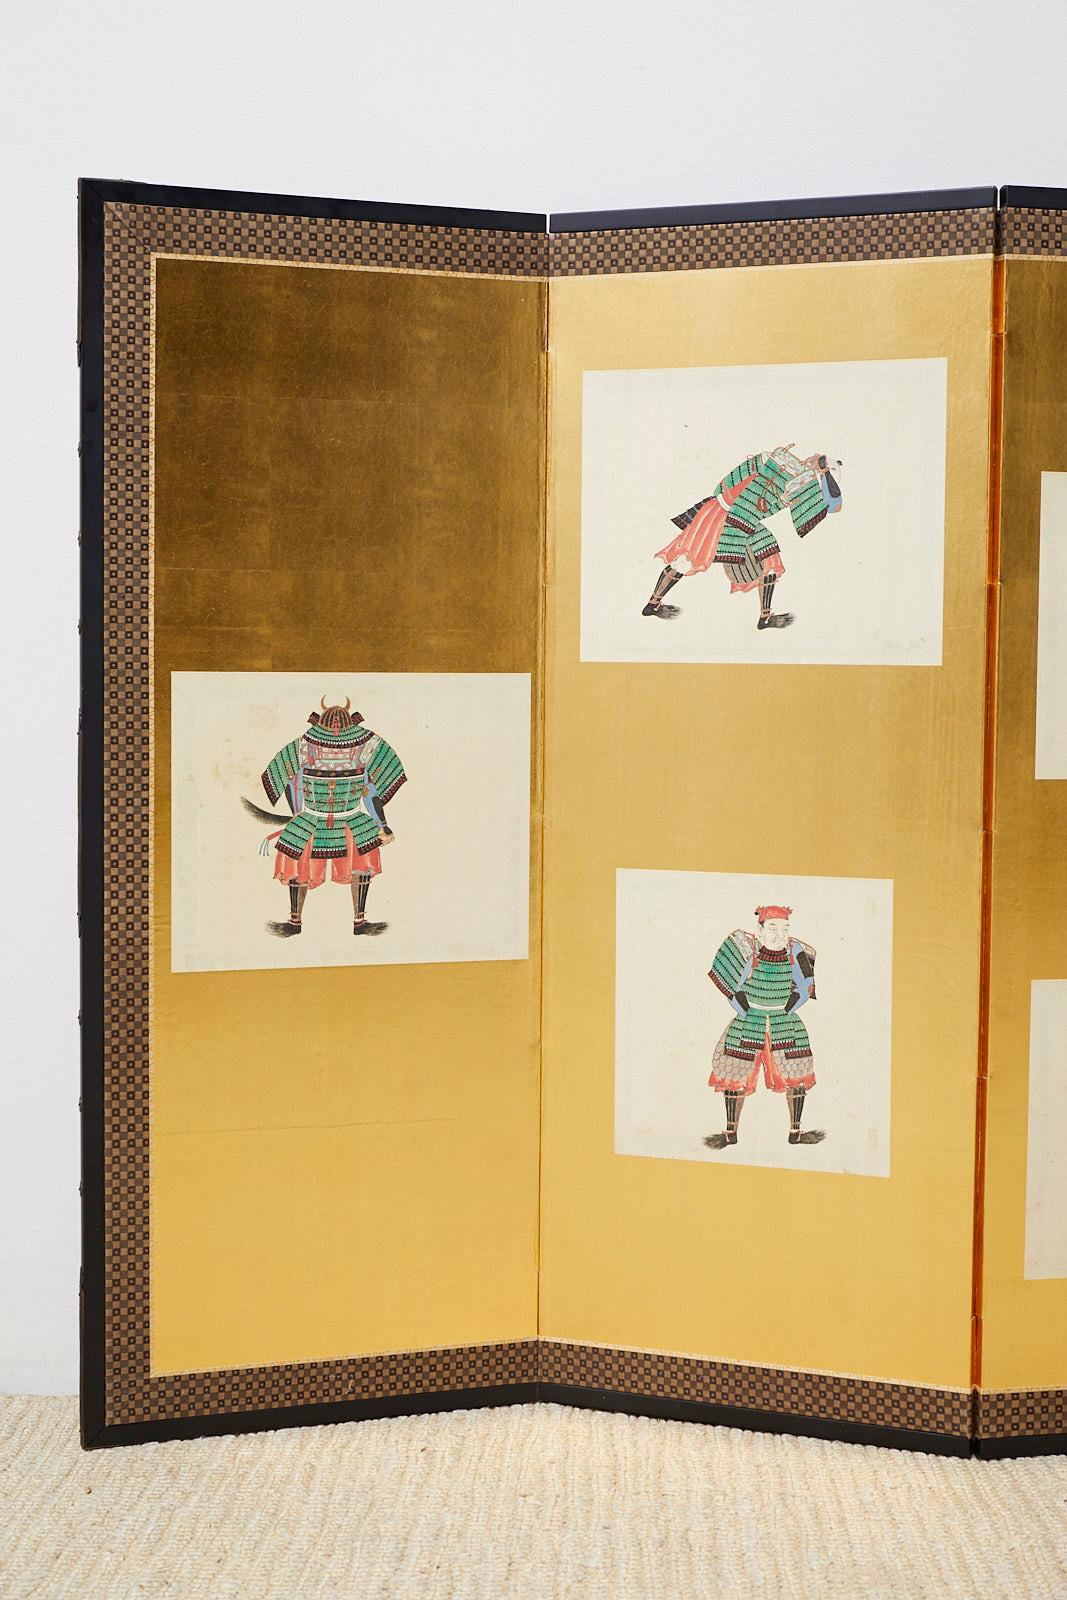 Faszinierender japanischer Sechspanel-Bildschirm aus der Meiji-Periode, der einen Samurai zeigt, der sich in die traditionelle Doppel-Rüstung eines Kriegers kleidet. Die Leinwand aus dem späten 19. und frühen 20. Jahrhundert zeigt kleinere Szenen